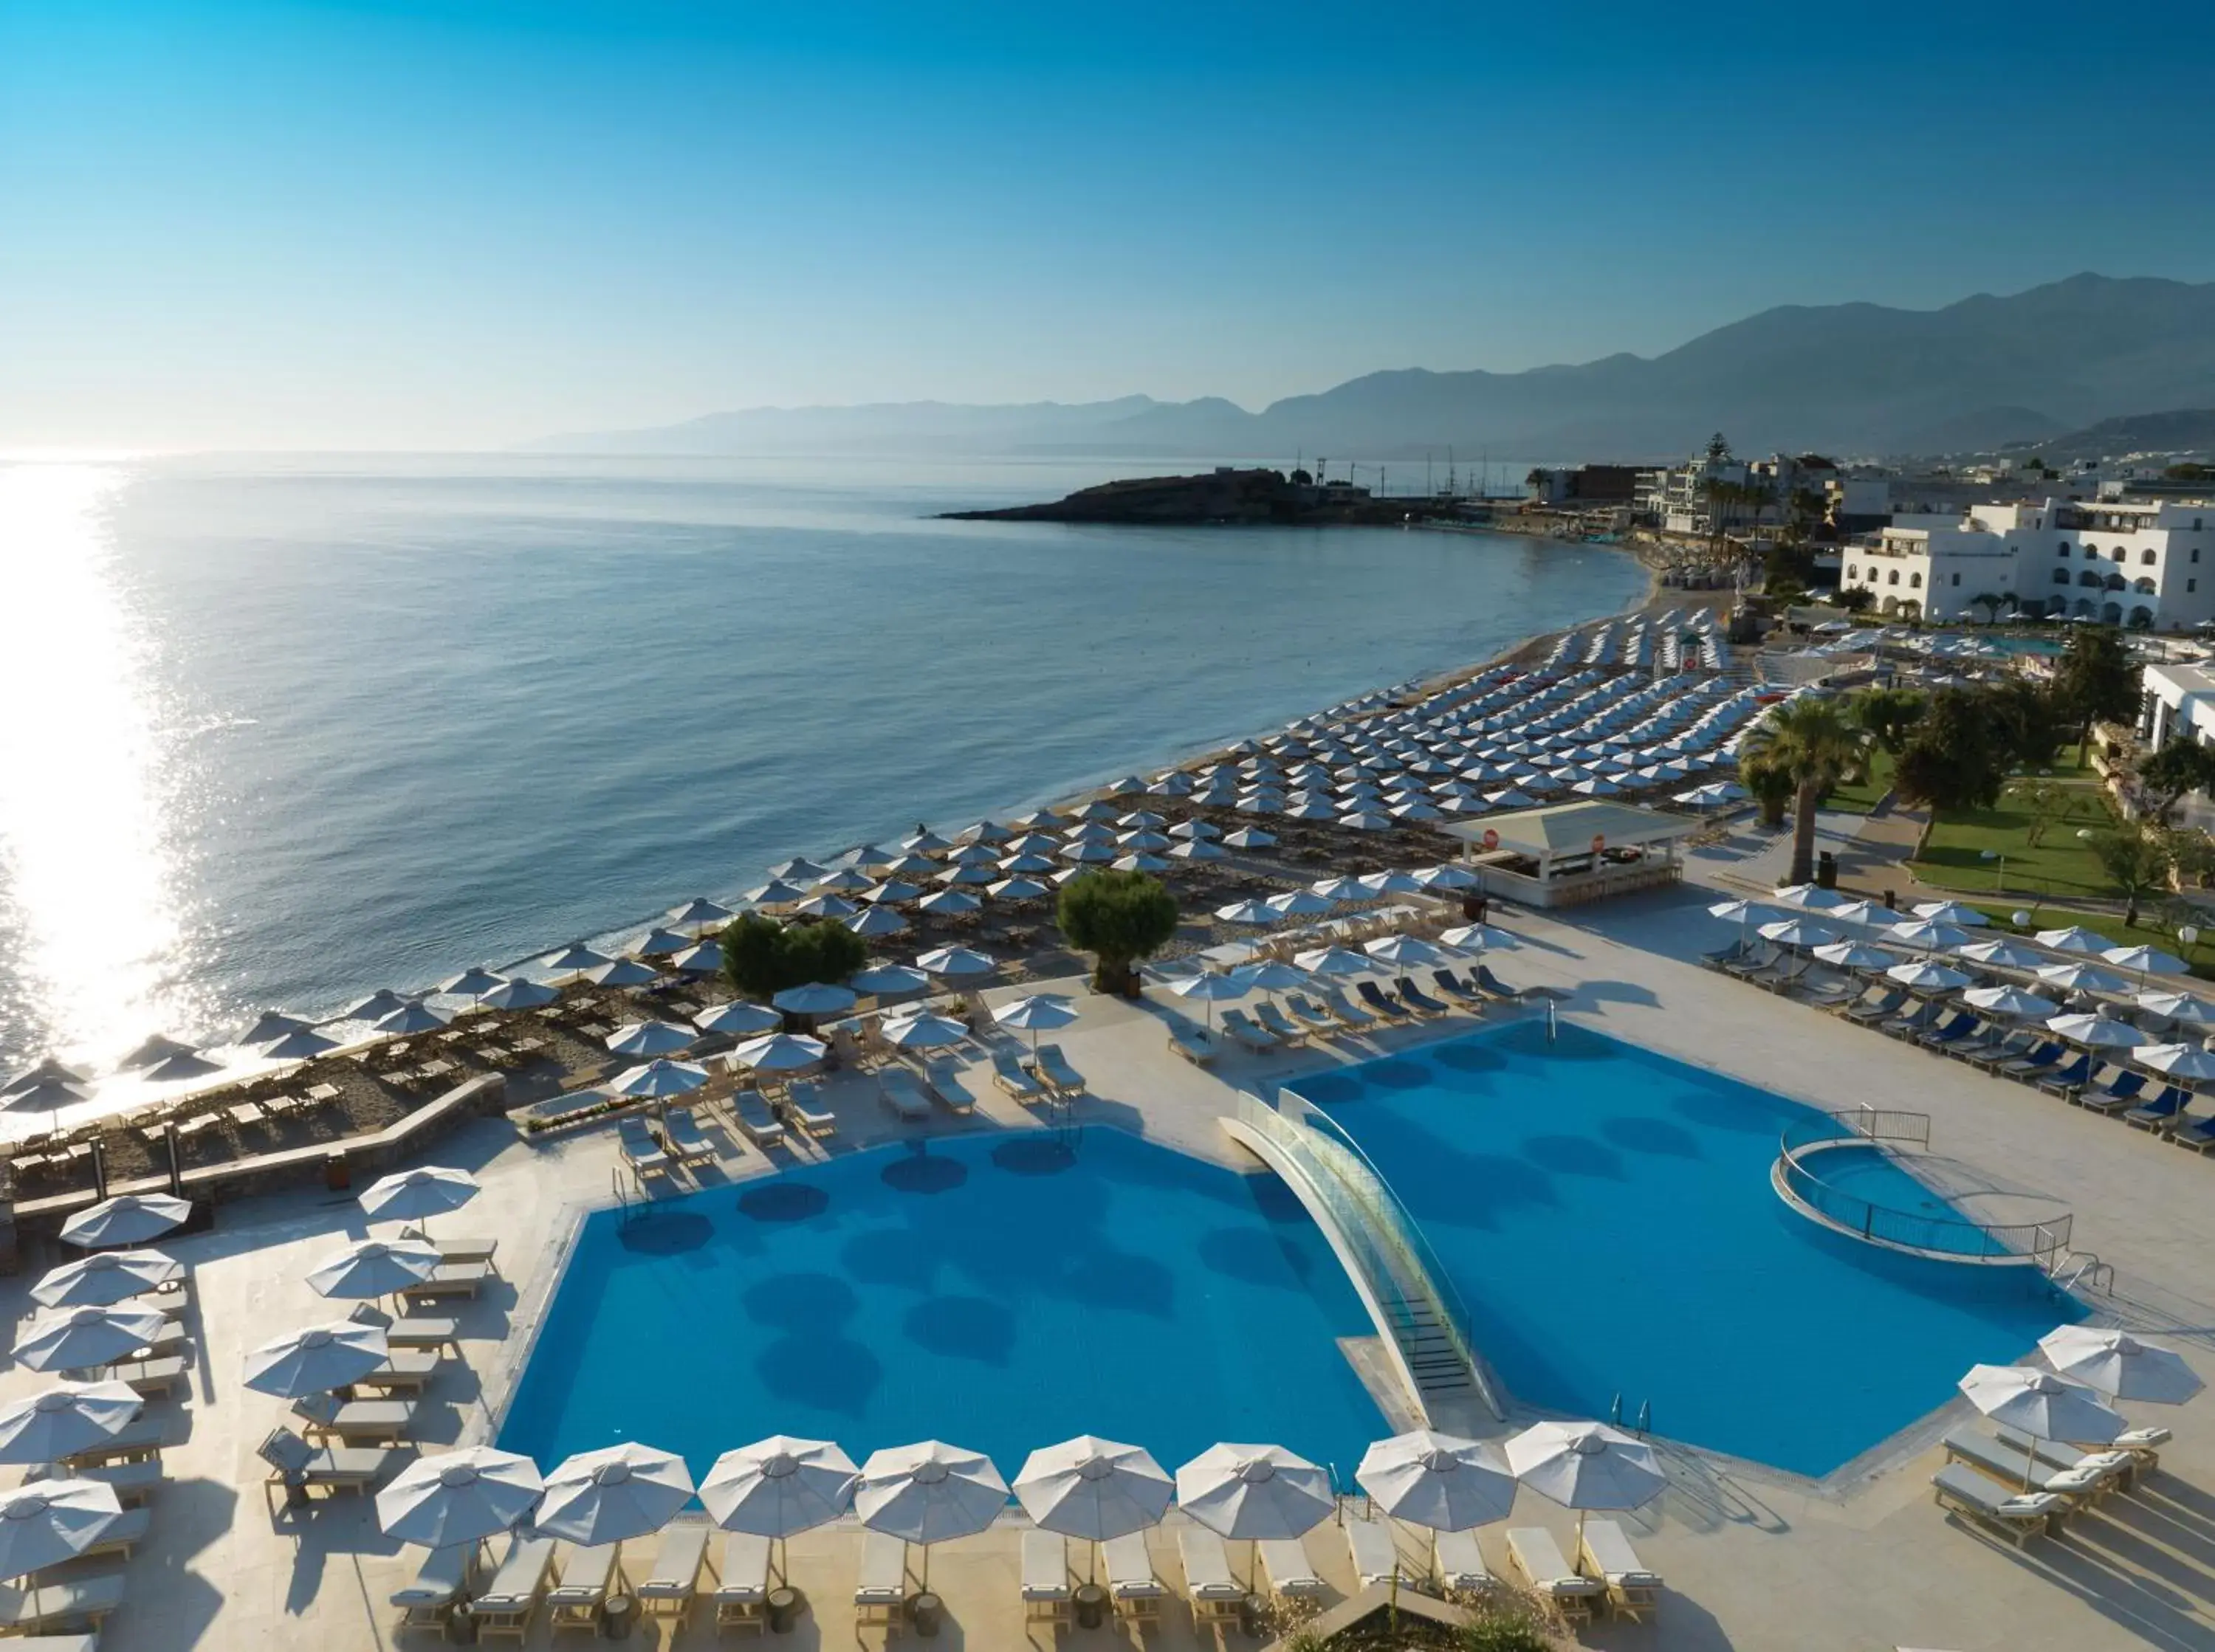 Swimming pool, Pool View in Creta Maris Resort